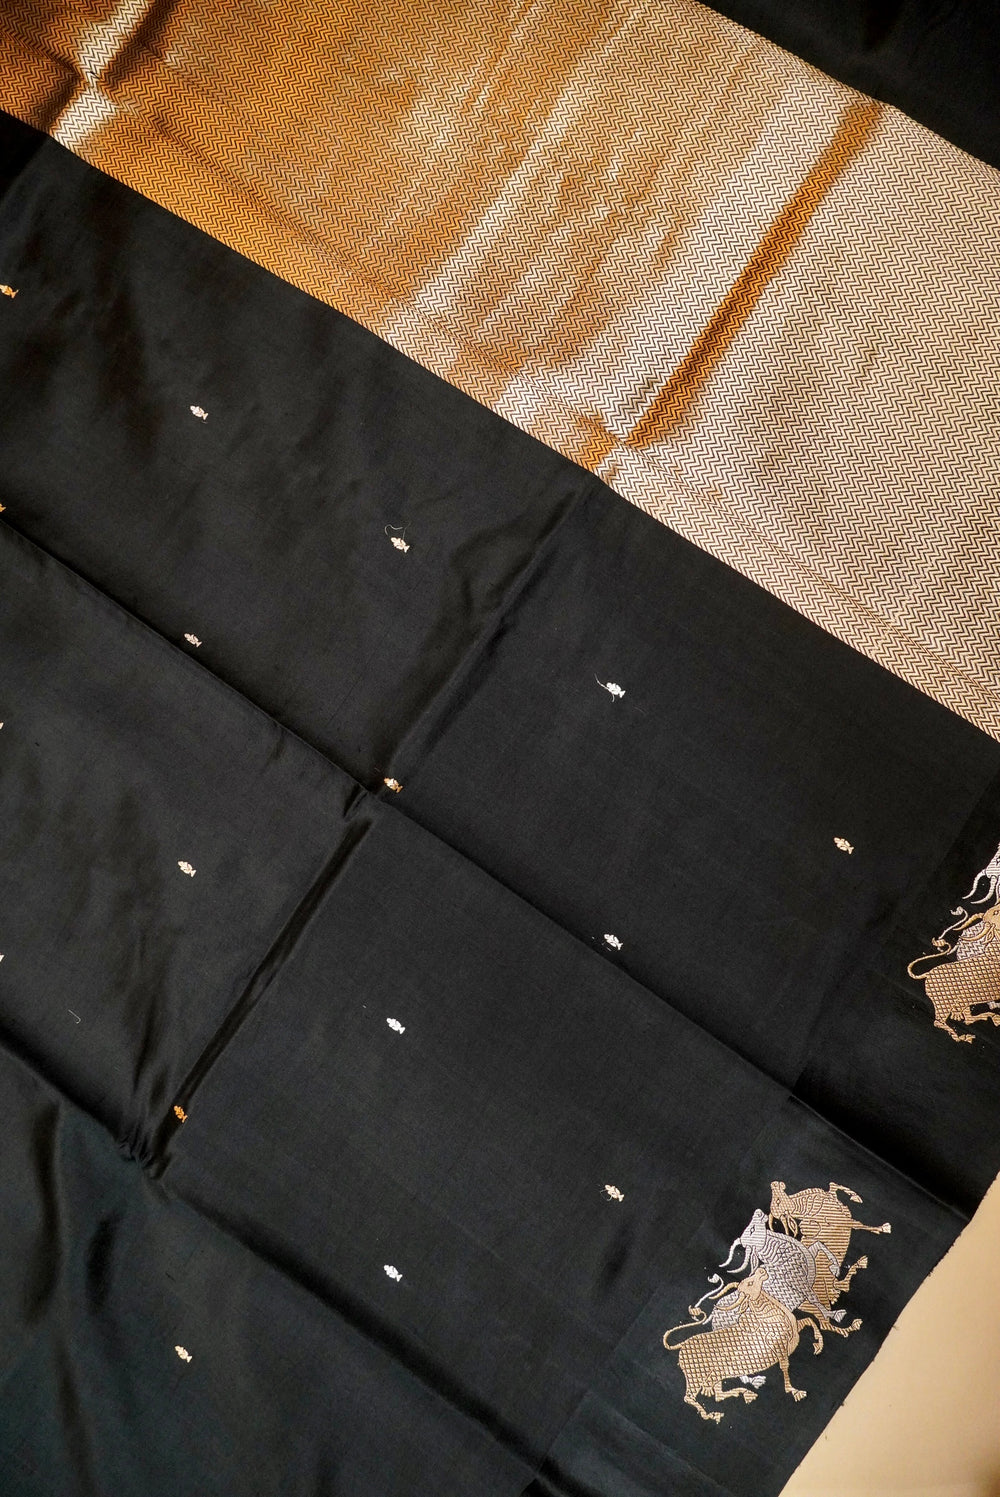 Handwoven Black Banarasi Soft Silk Saree